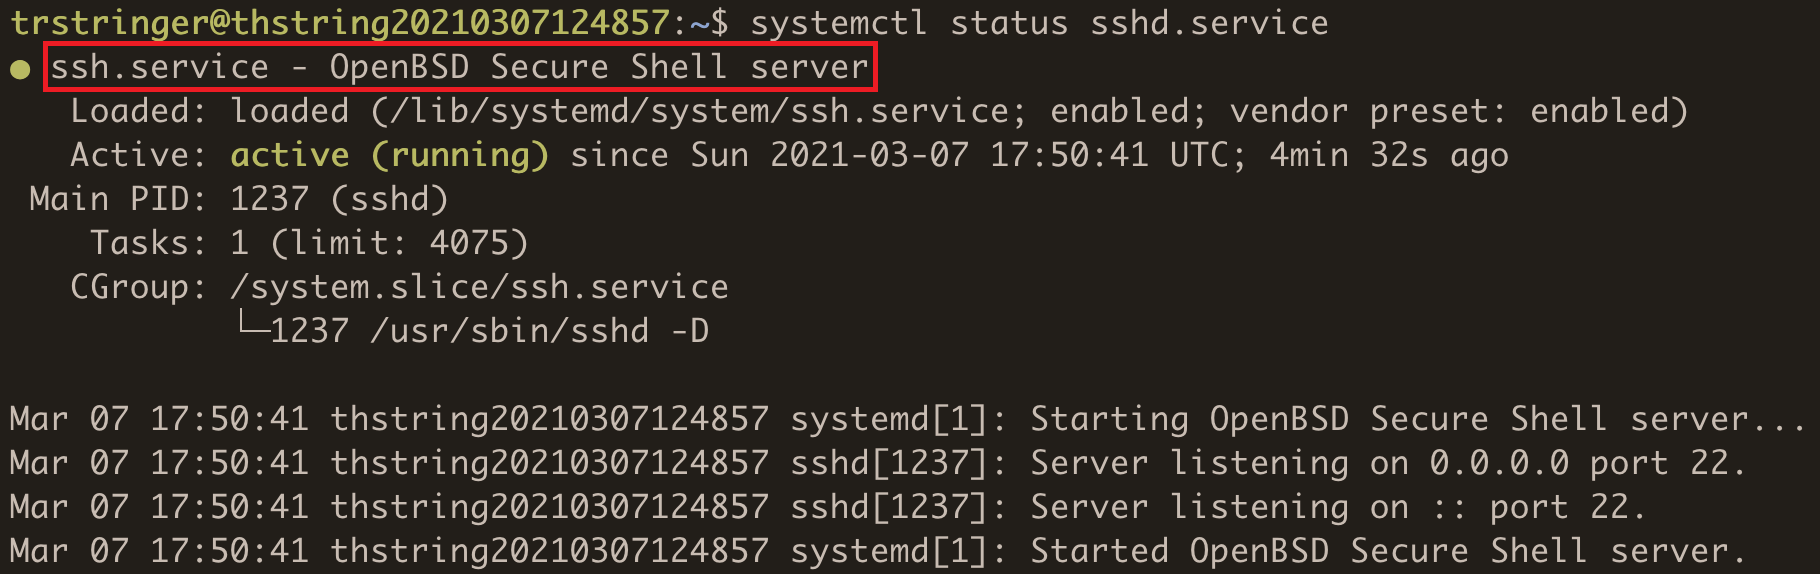 ssh.service status description